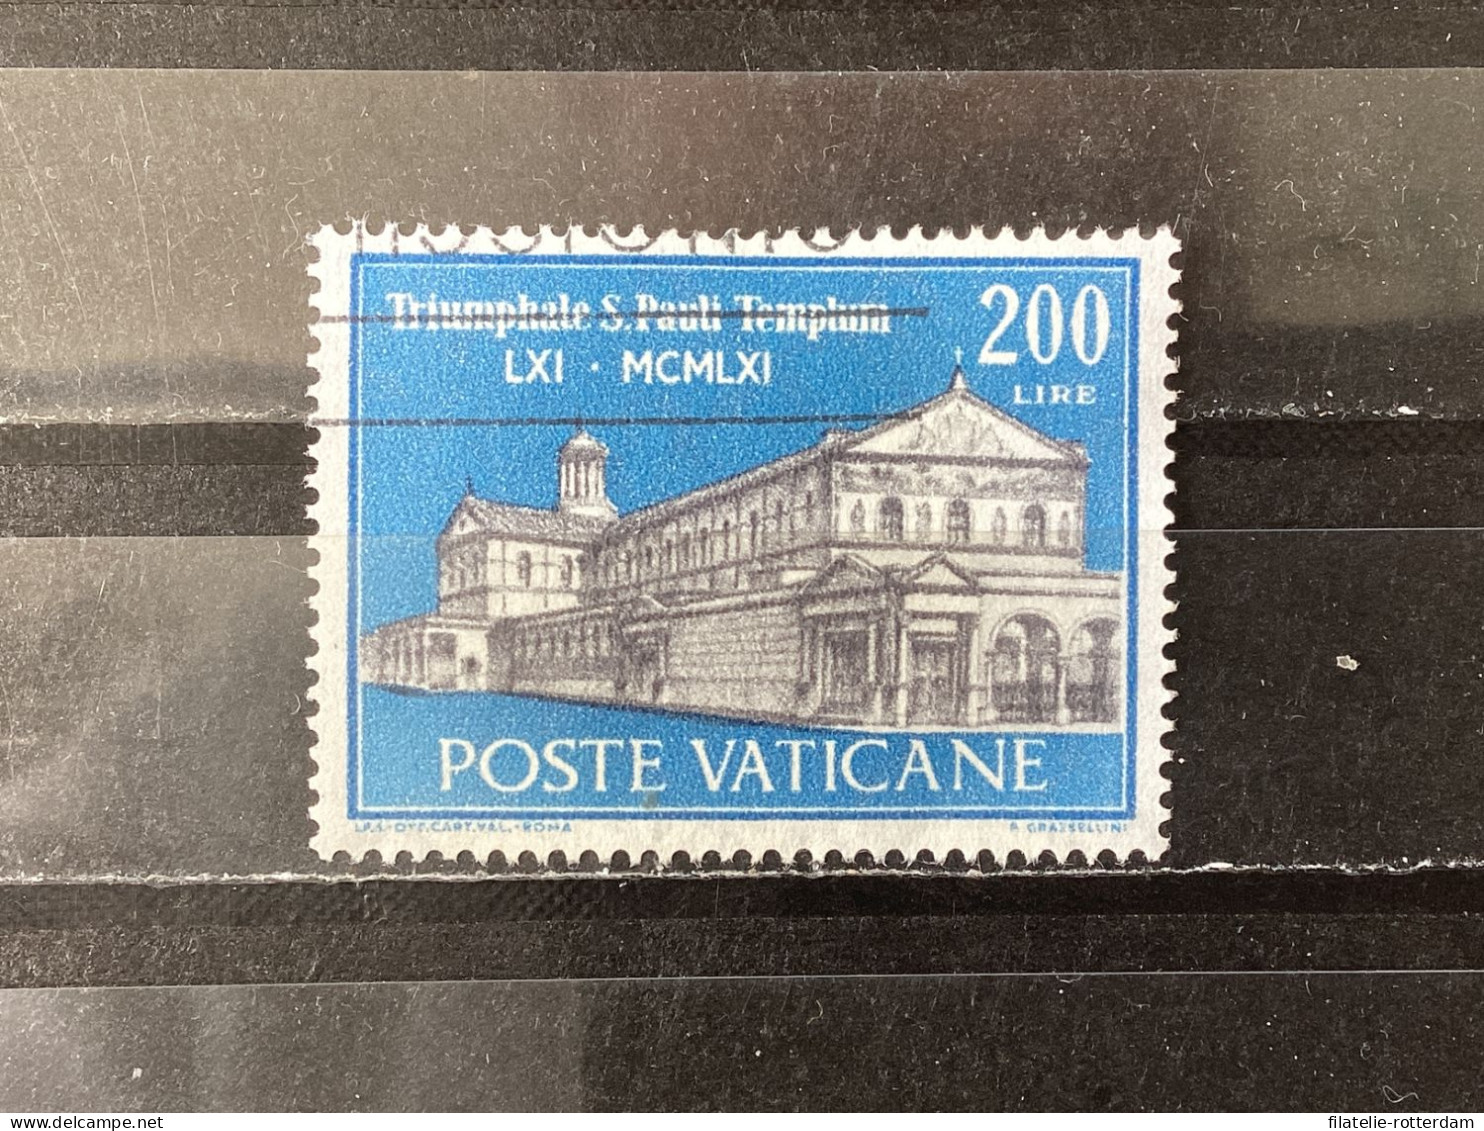 Vatican City / Vaticaanstad - Sct. Paul In Rome (200) 1961 - Usati